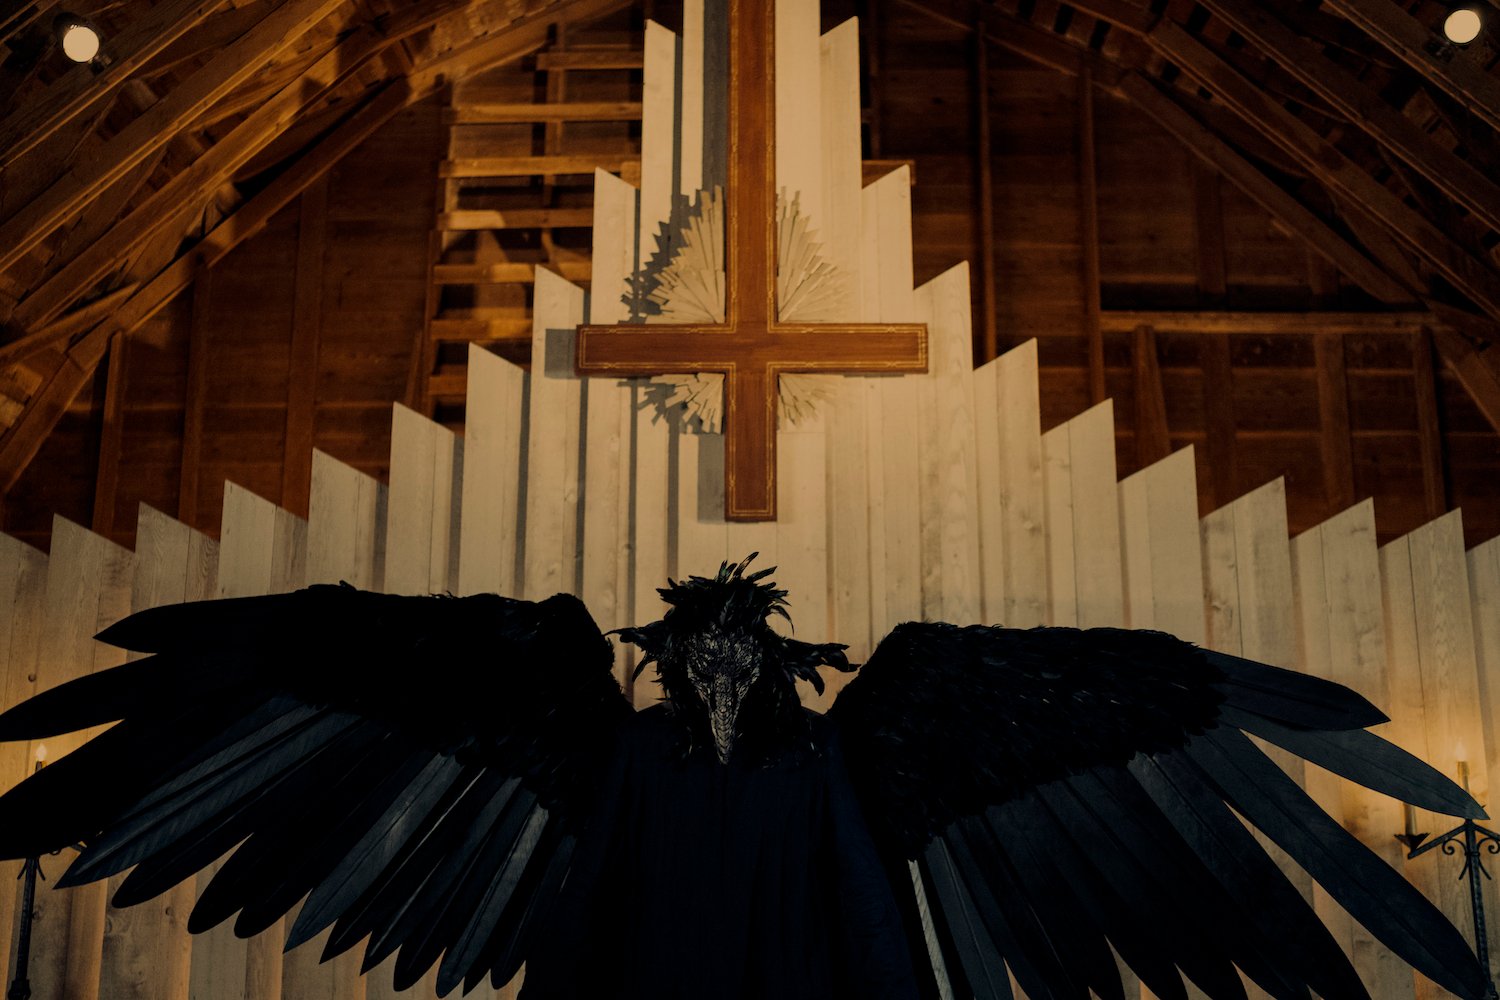 実話に一部基づいたNetflixの「オハイオ州の悪魔」からの大きな黒い鳥と逆さまの十字架を特徴とする作品.